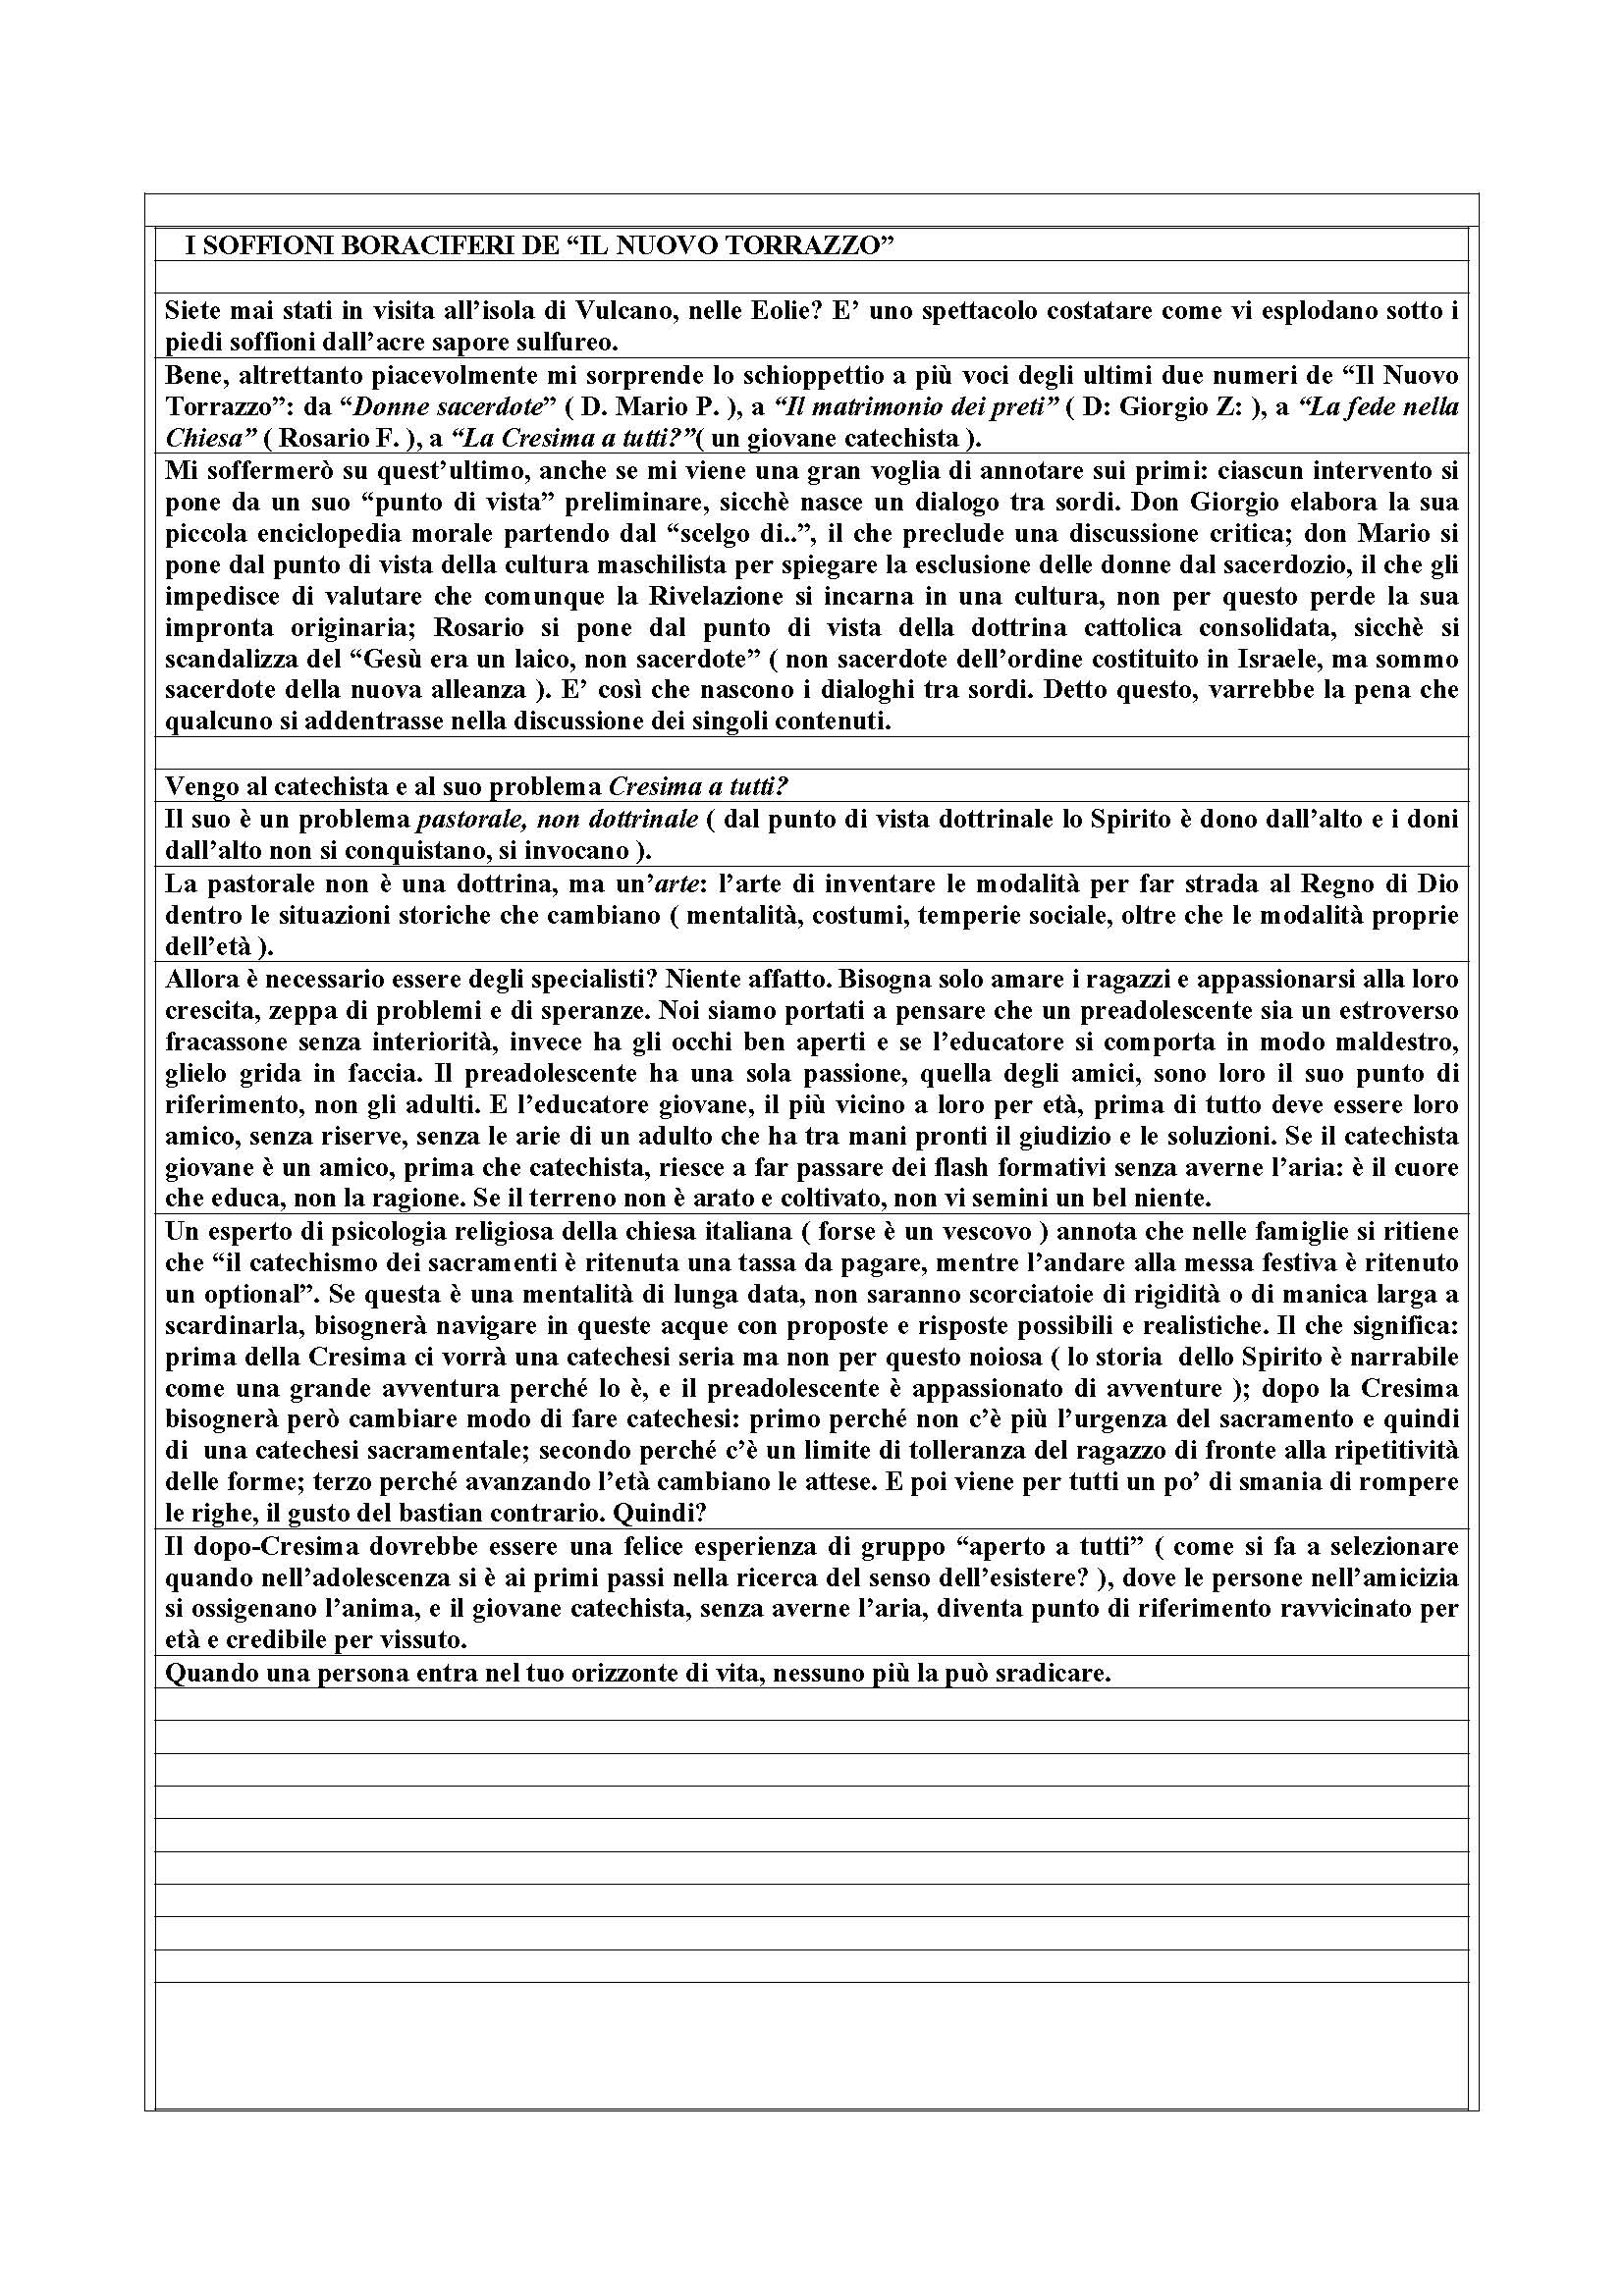 Soffioni_dal_Nuovo_Torrazzo.pdf